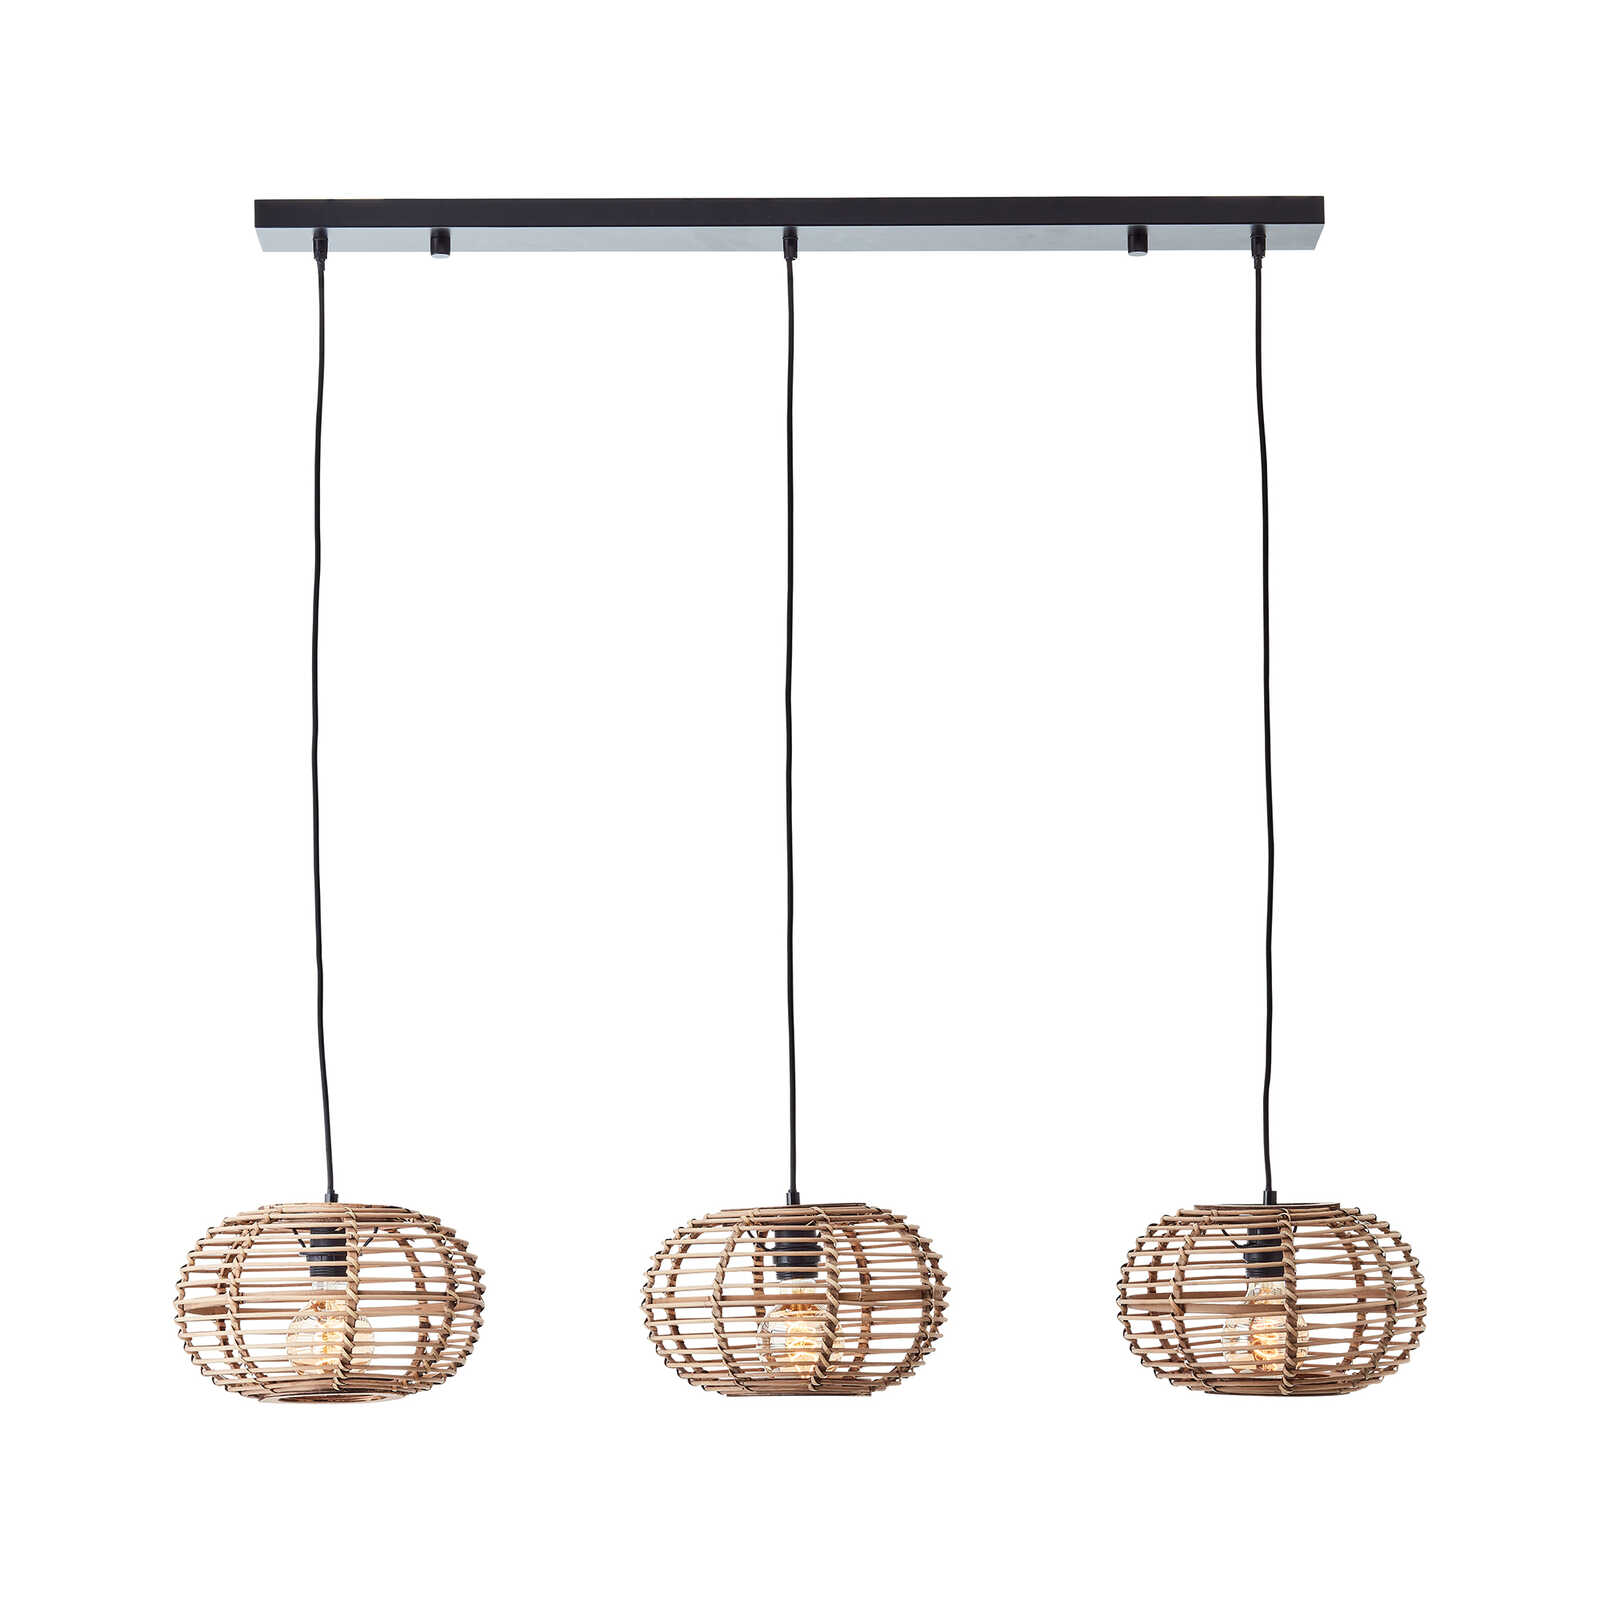 Metalen hanglamp - Viktor 6 - Bruin
